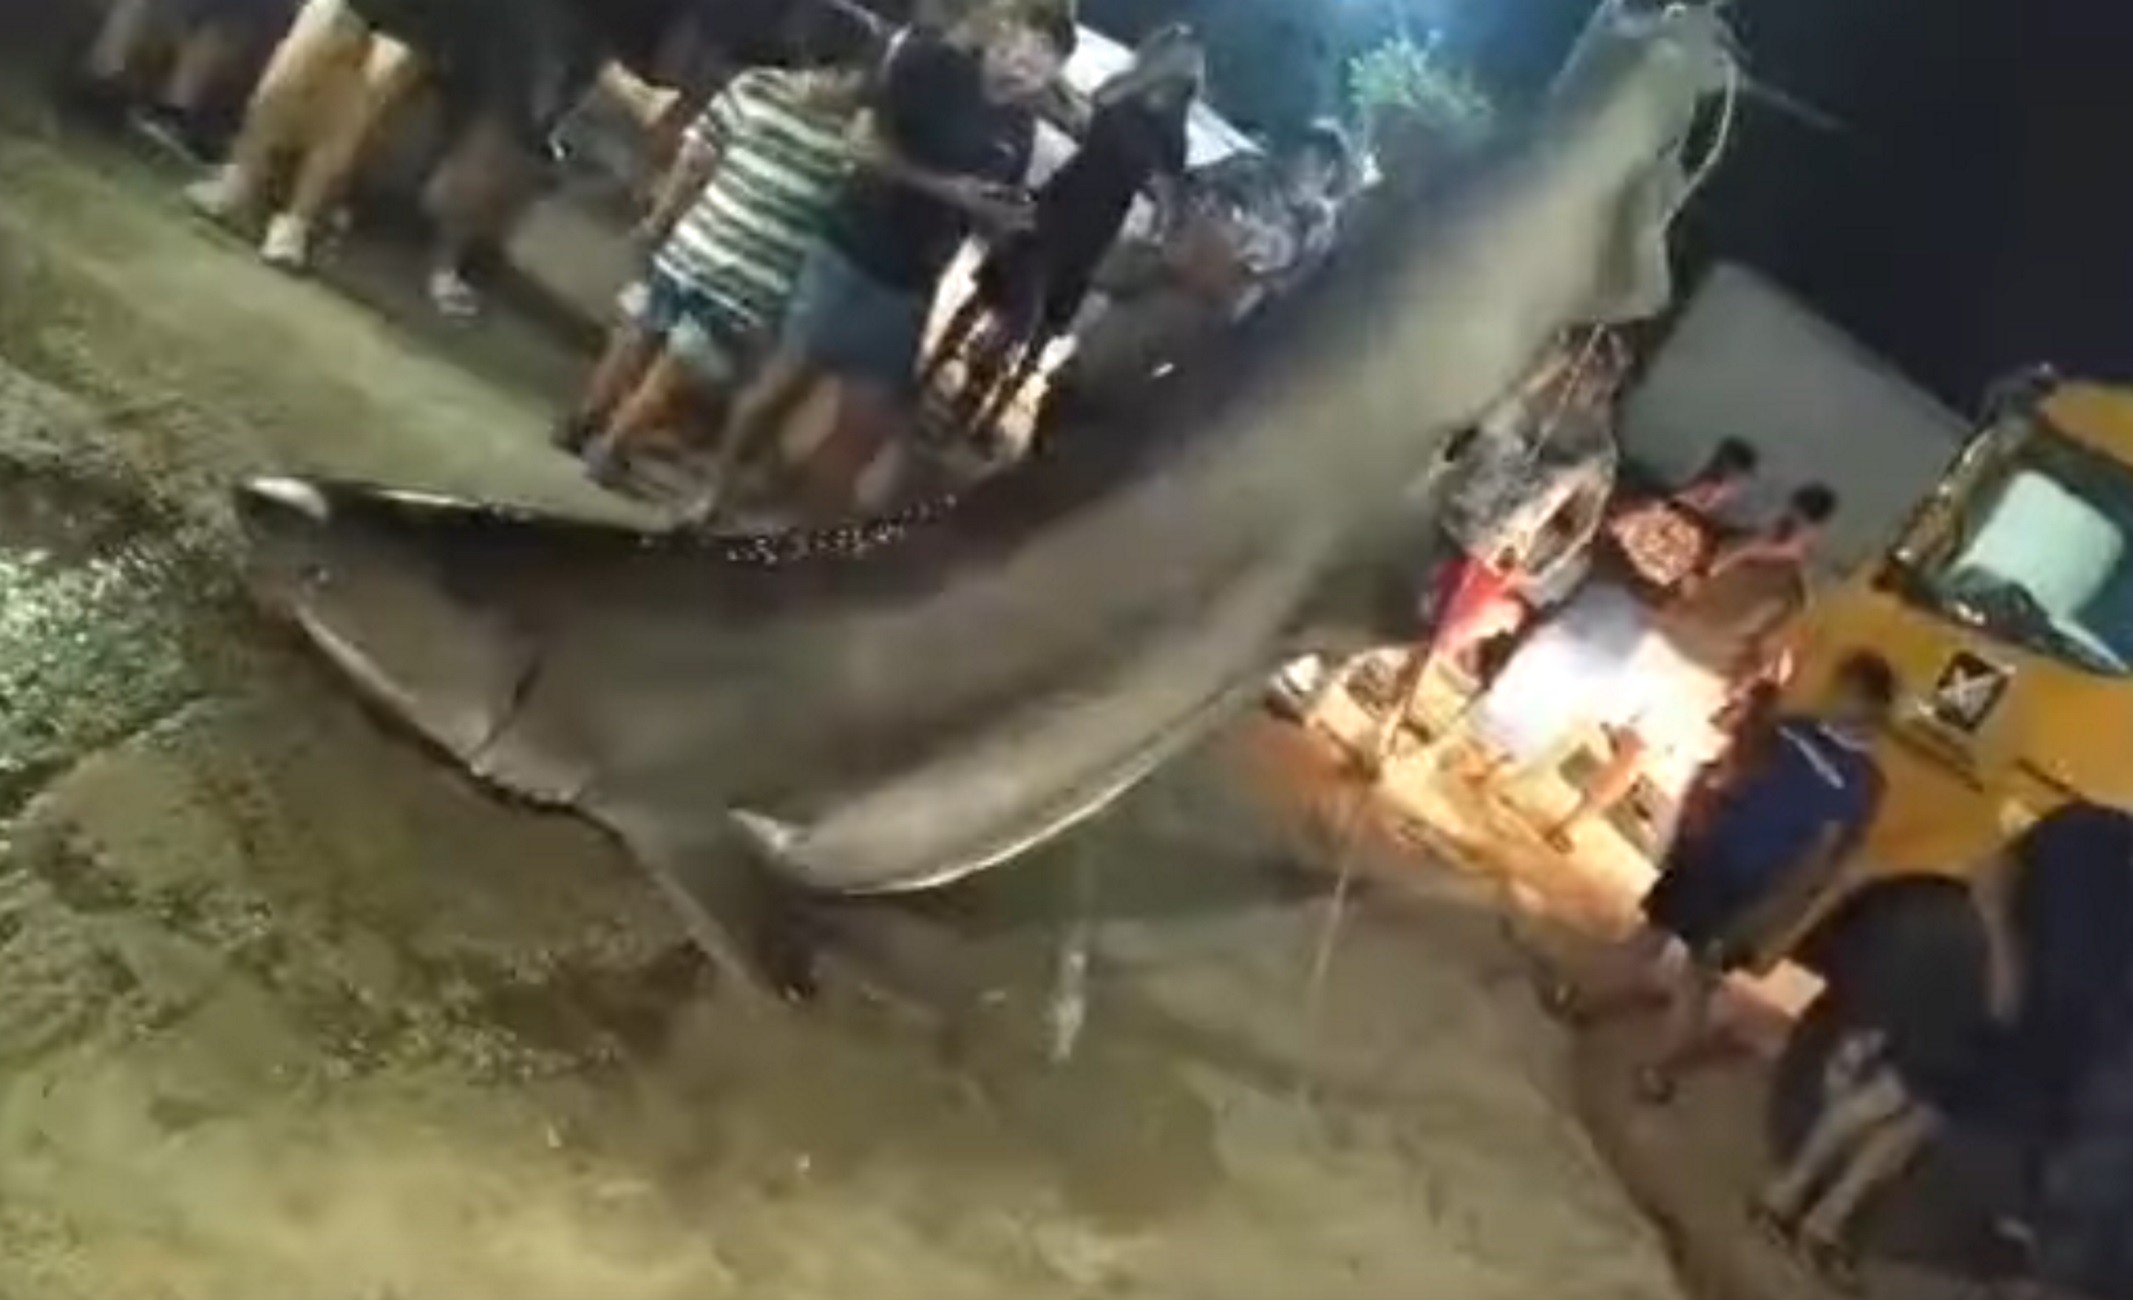 Πάτρα: Ένας καρχαρίας ασήκωτος! Οι ψαράδες φώναξαν γερανό για να τους βοηθήσει να τον σηκώσουν (Βίντεο)